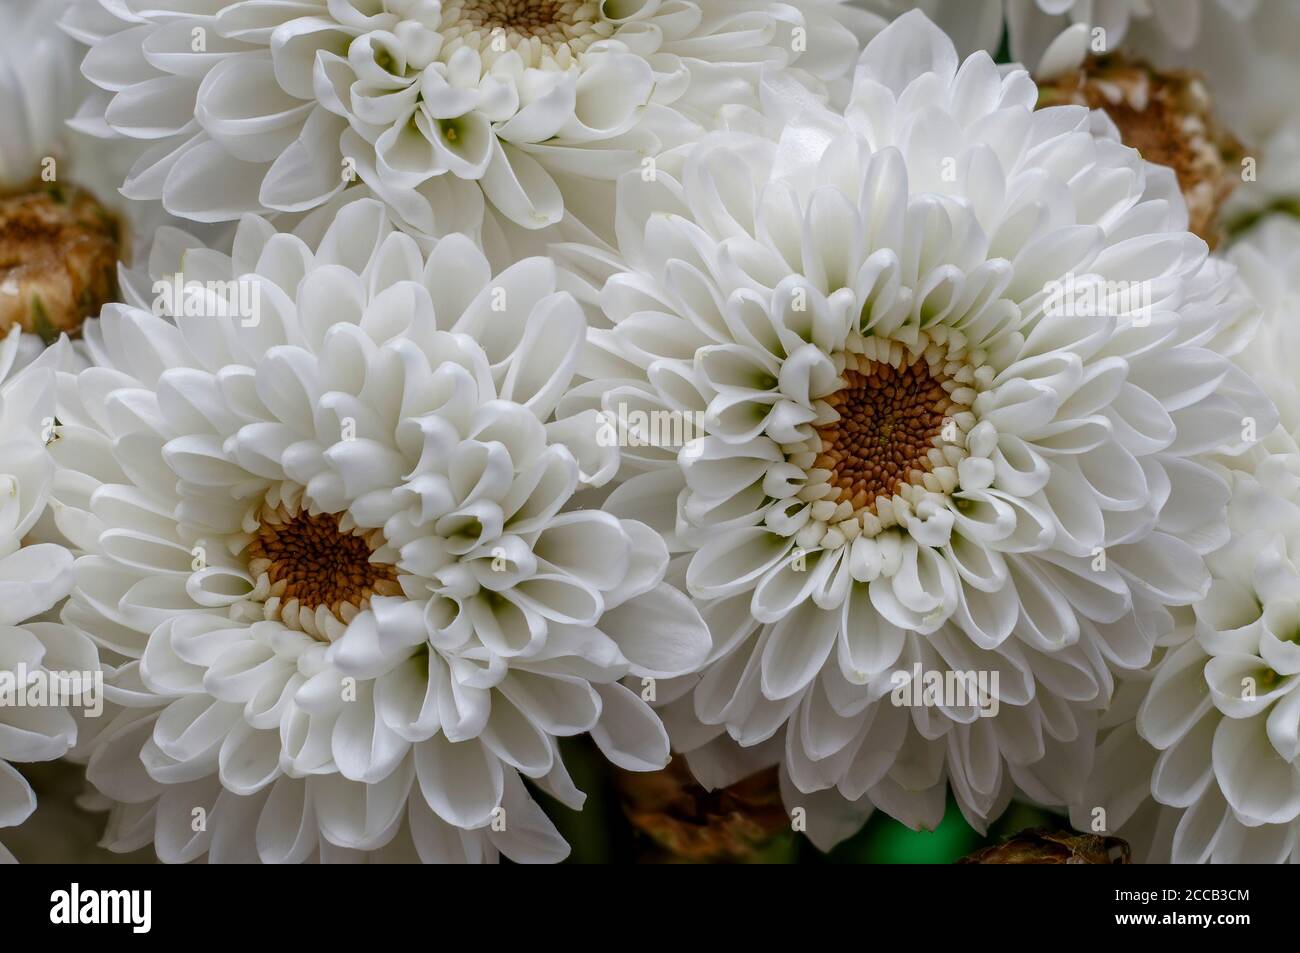 In voller Blüte, weiße hrysanthemum Blume, Dendranthema des Moul, Rahmen aus bilska, Blume in voller Blüte große helle Blume leben Wand Stockfoto